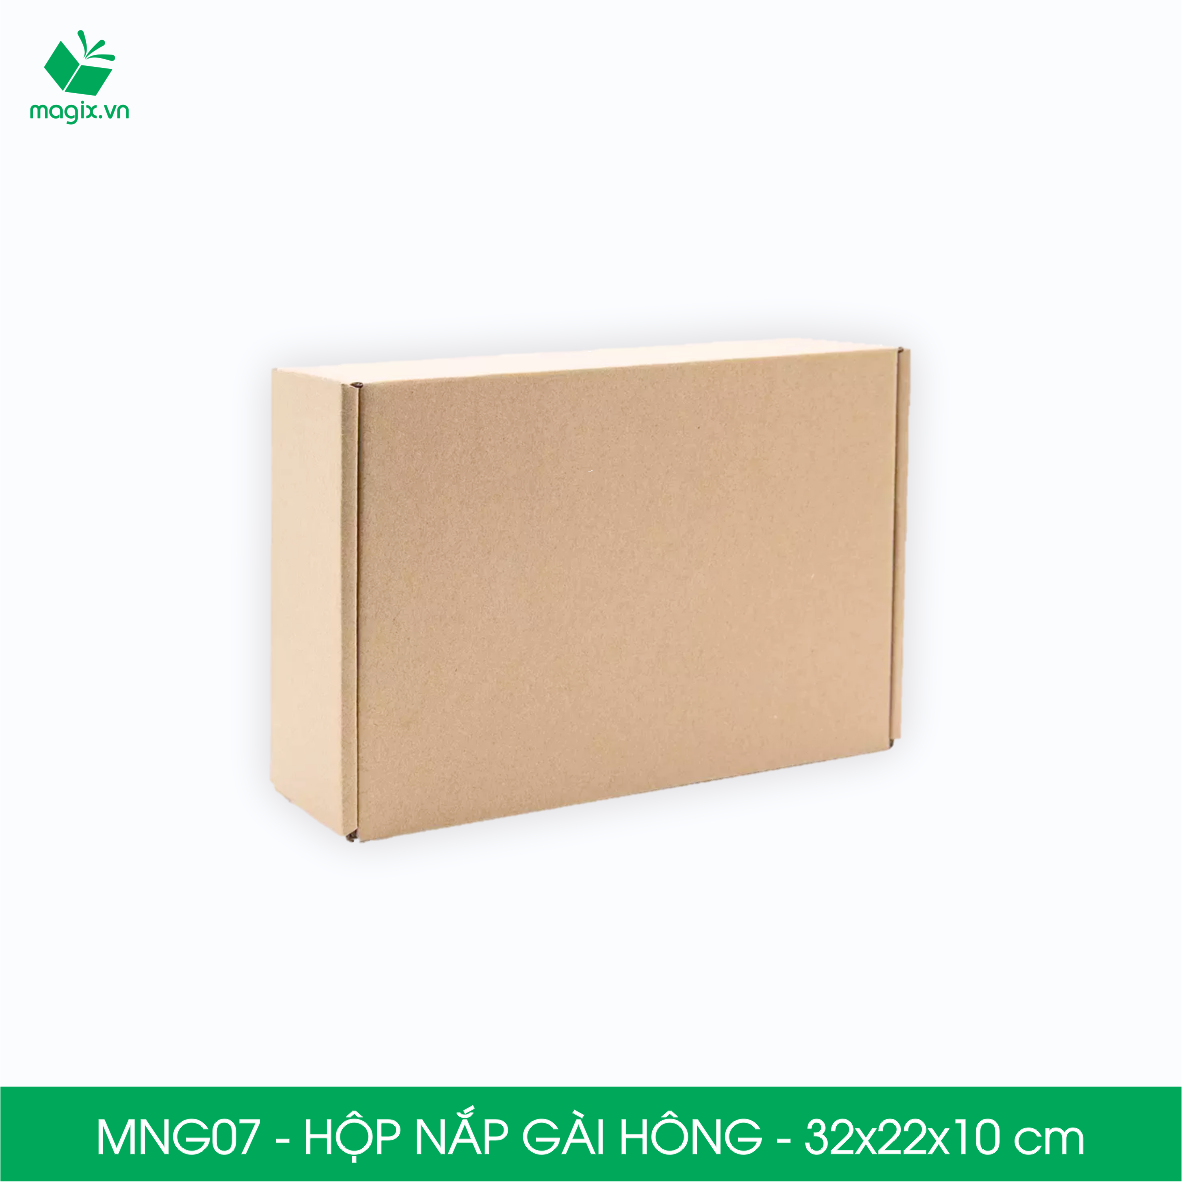 MNG07 - 32x22x10cm - Combo 20 hộp nắp gài hông - Thùng carton đóng hàng